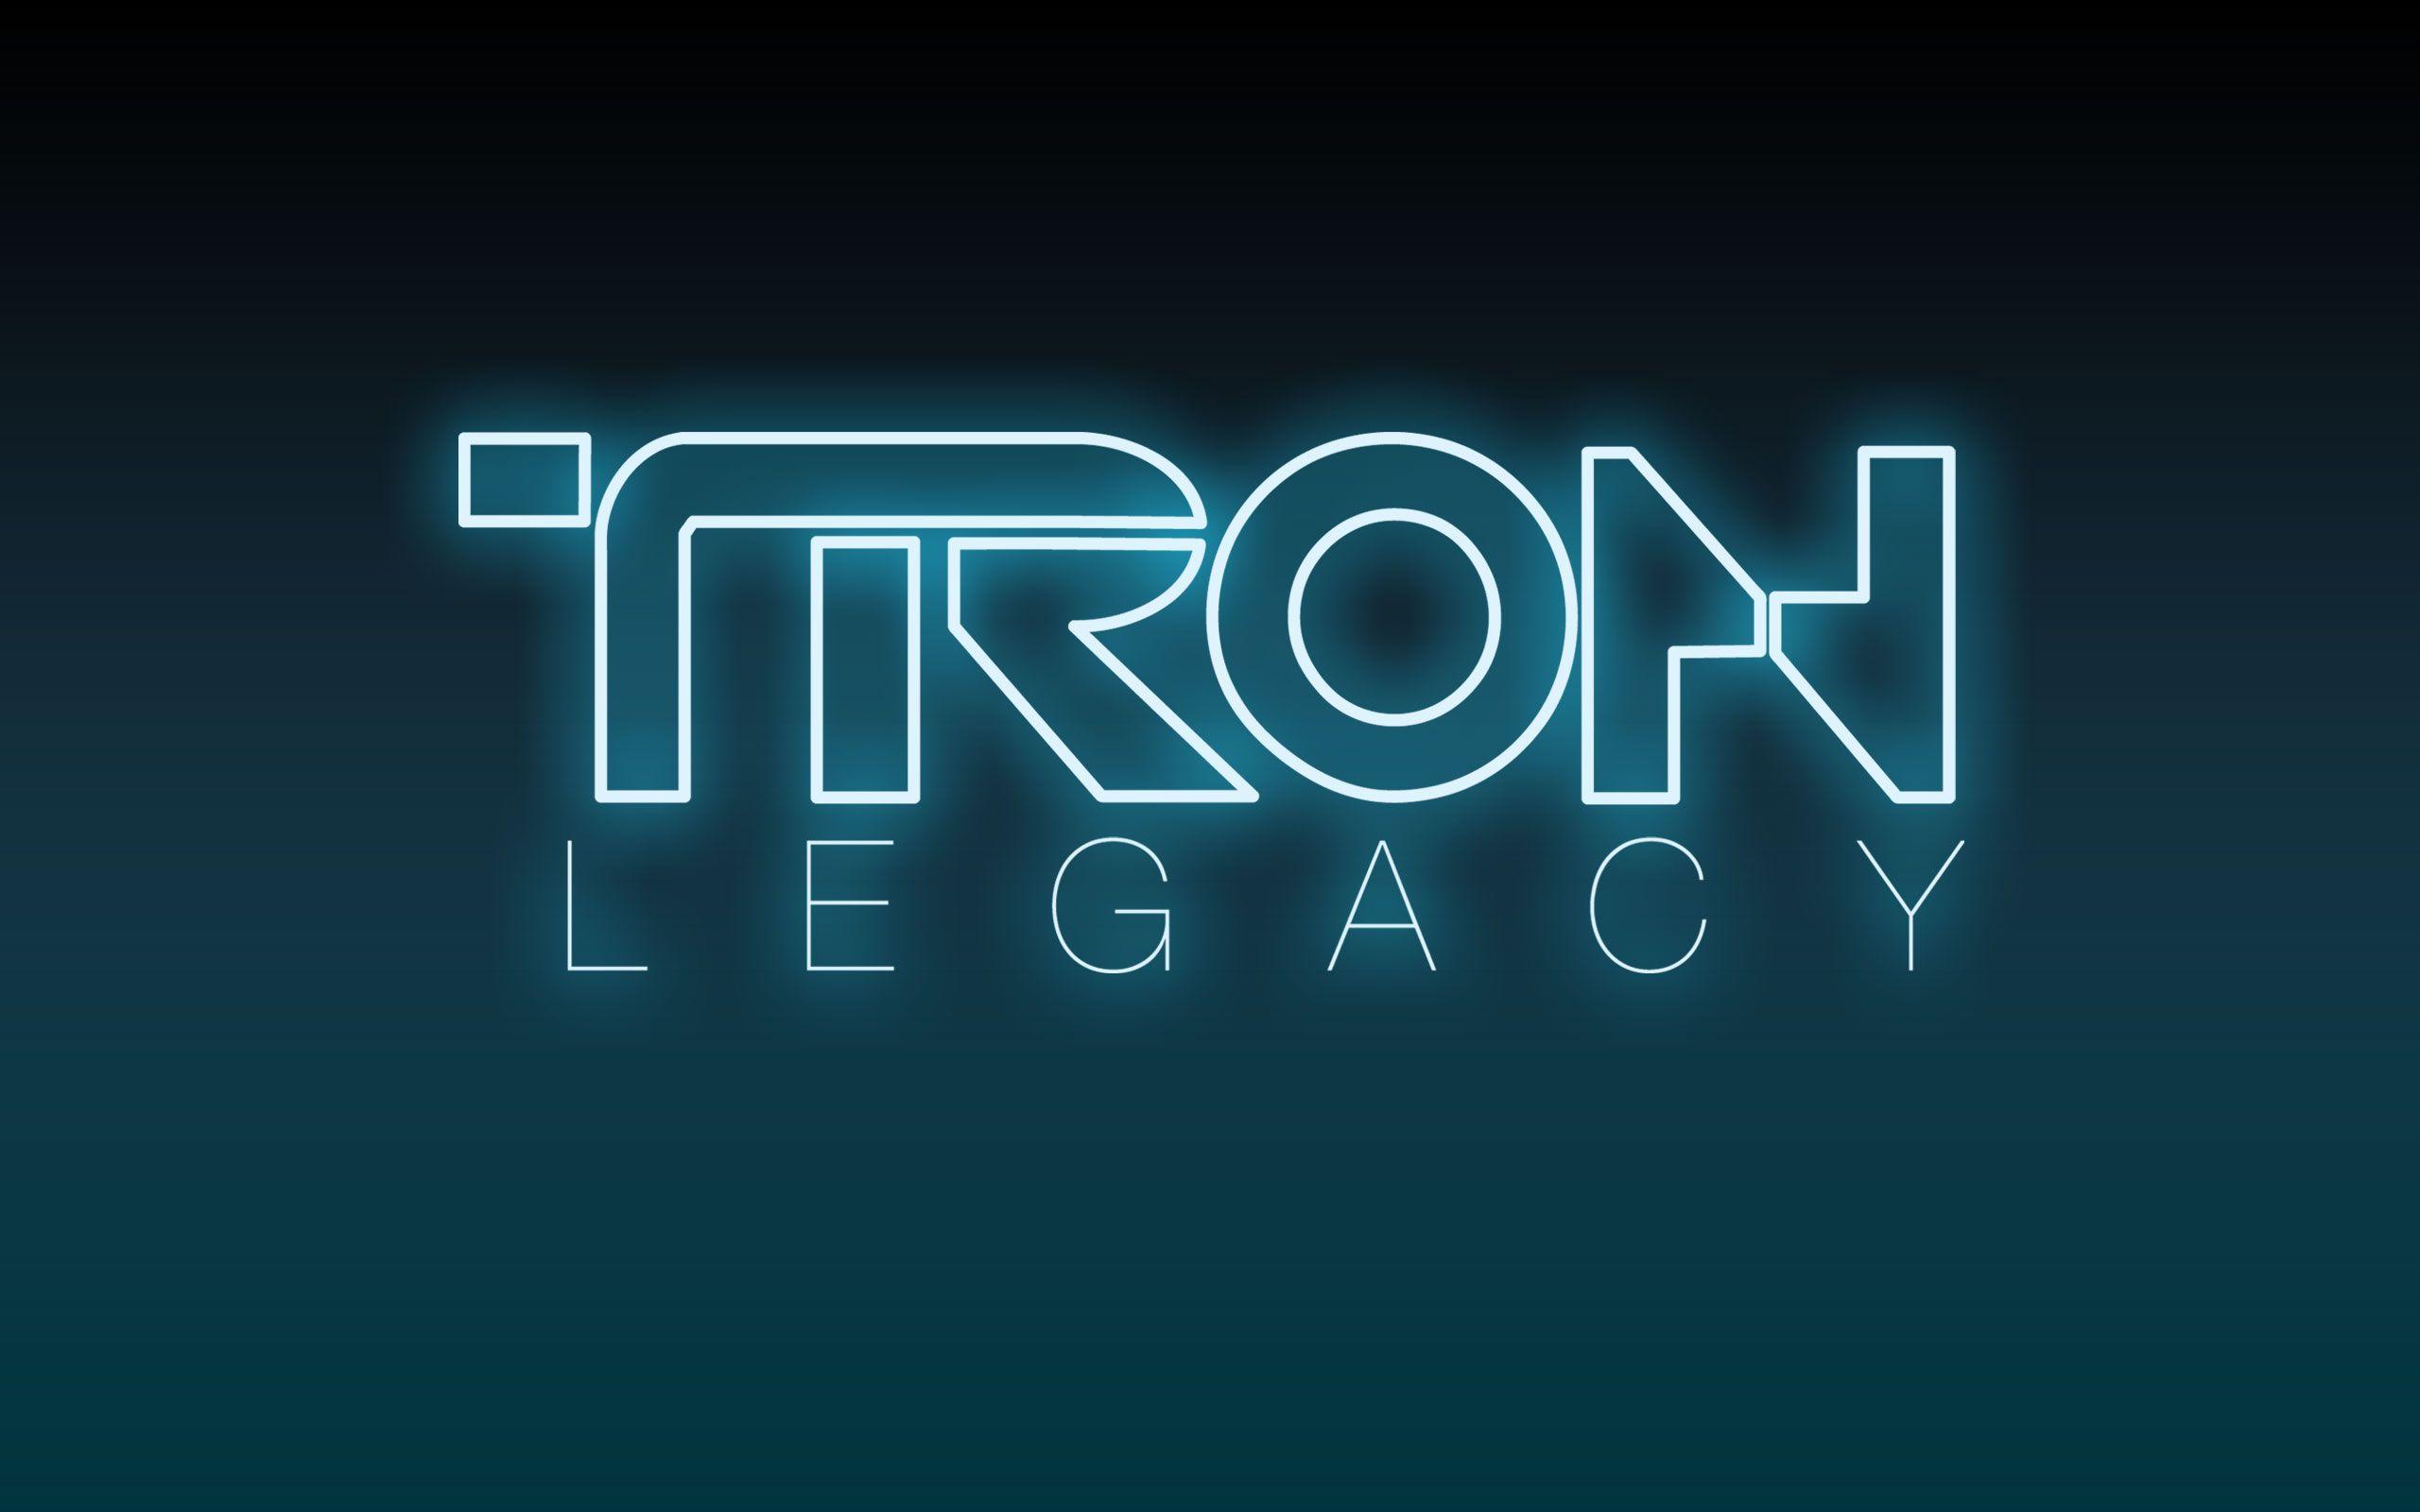 Tron: Legacy Desktop Wallpaper